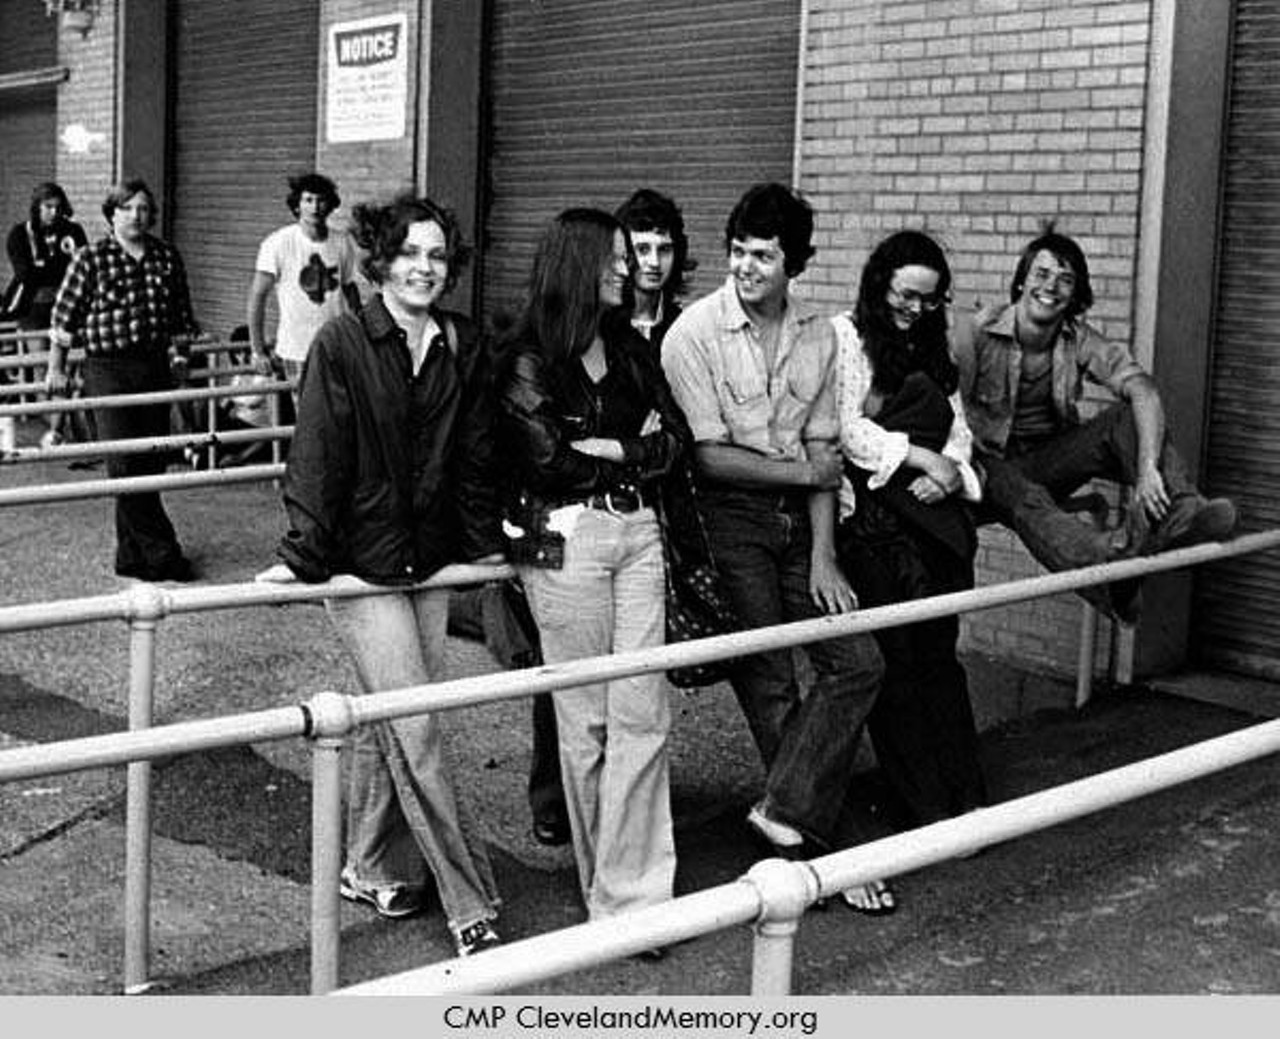  Fans Waiting for Beach Boys Concert, Municipal Stadium, 1975 